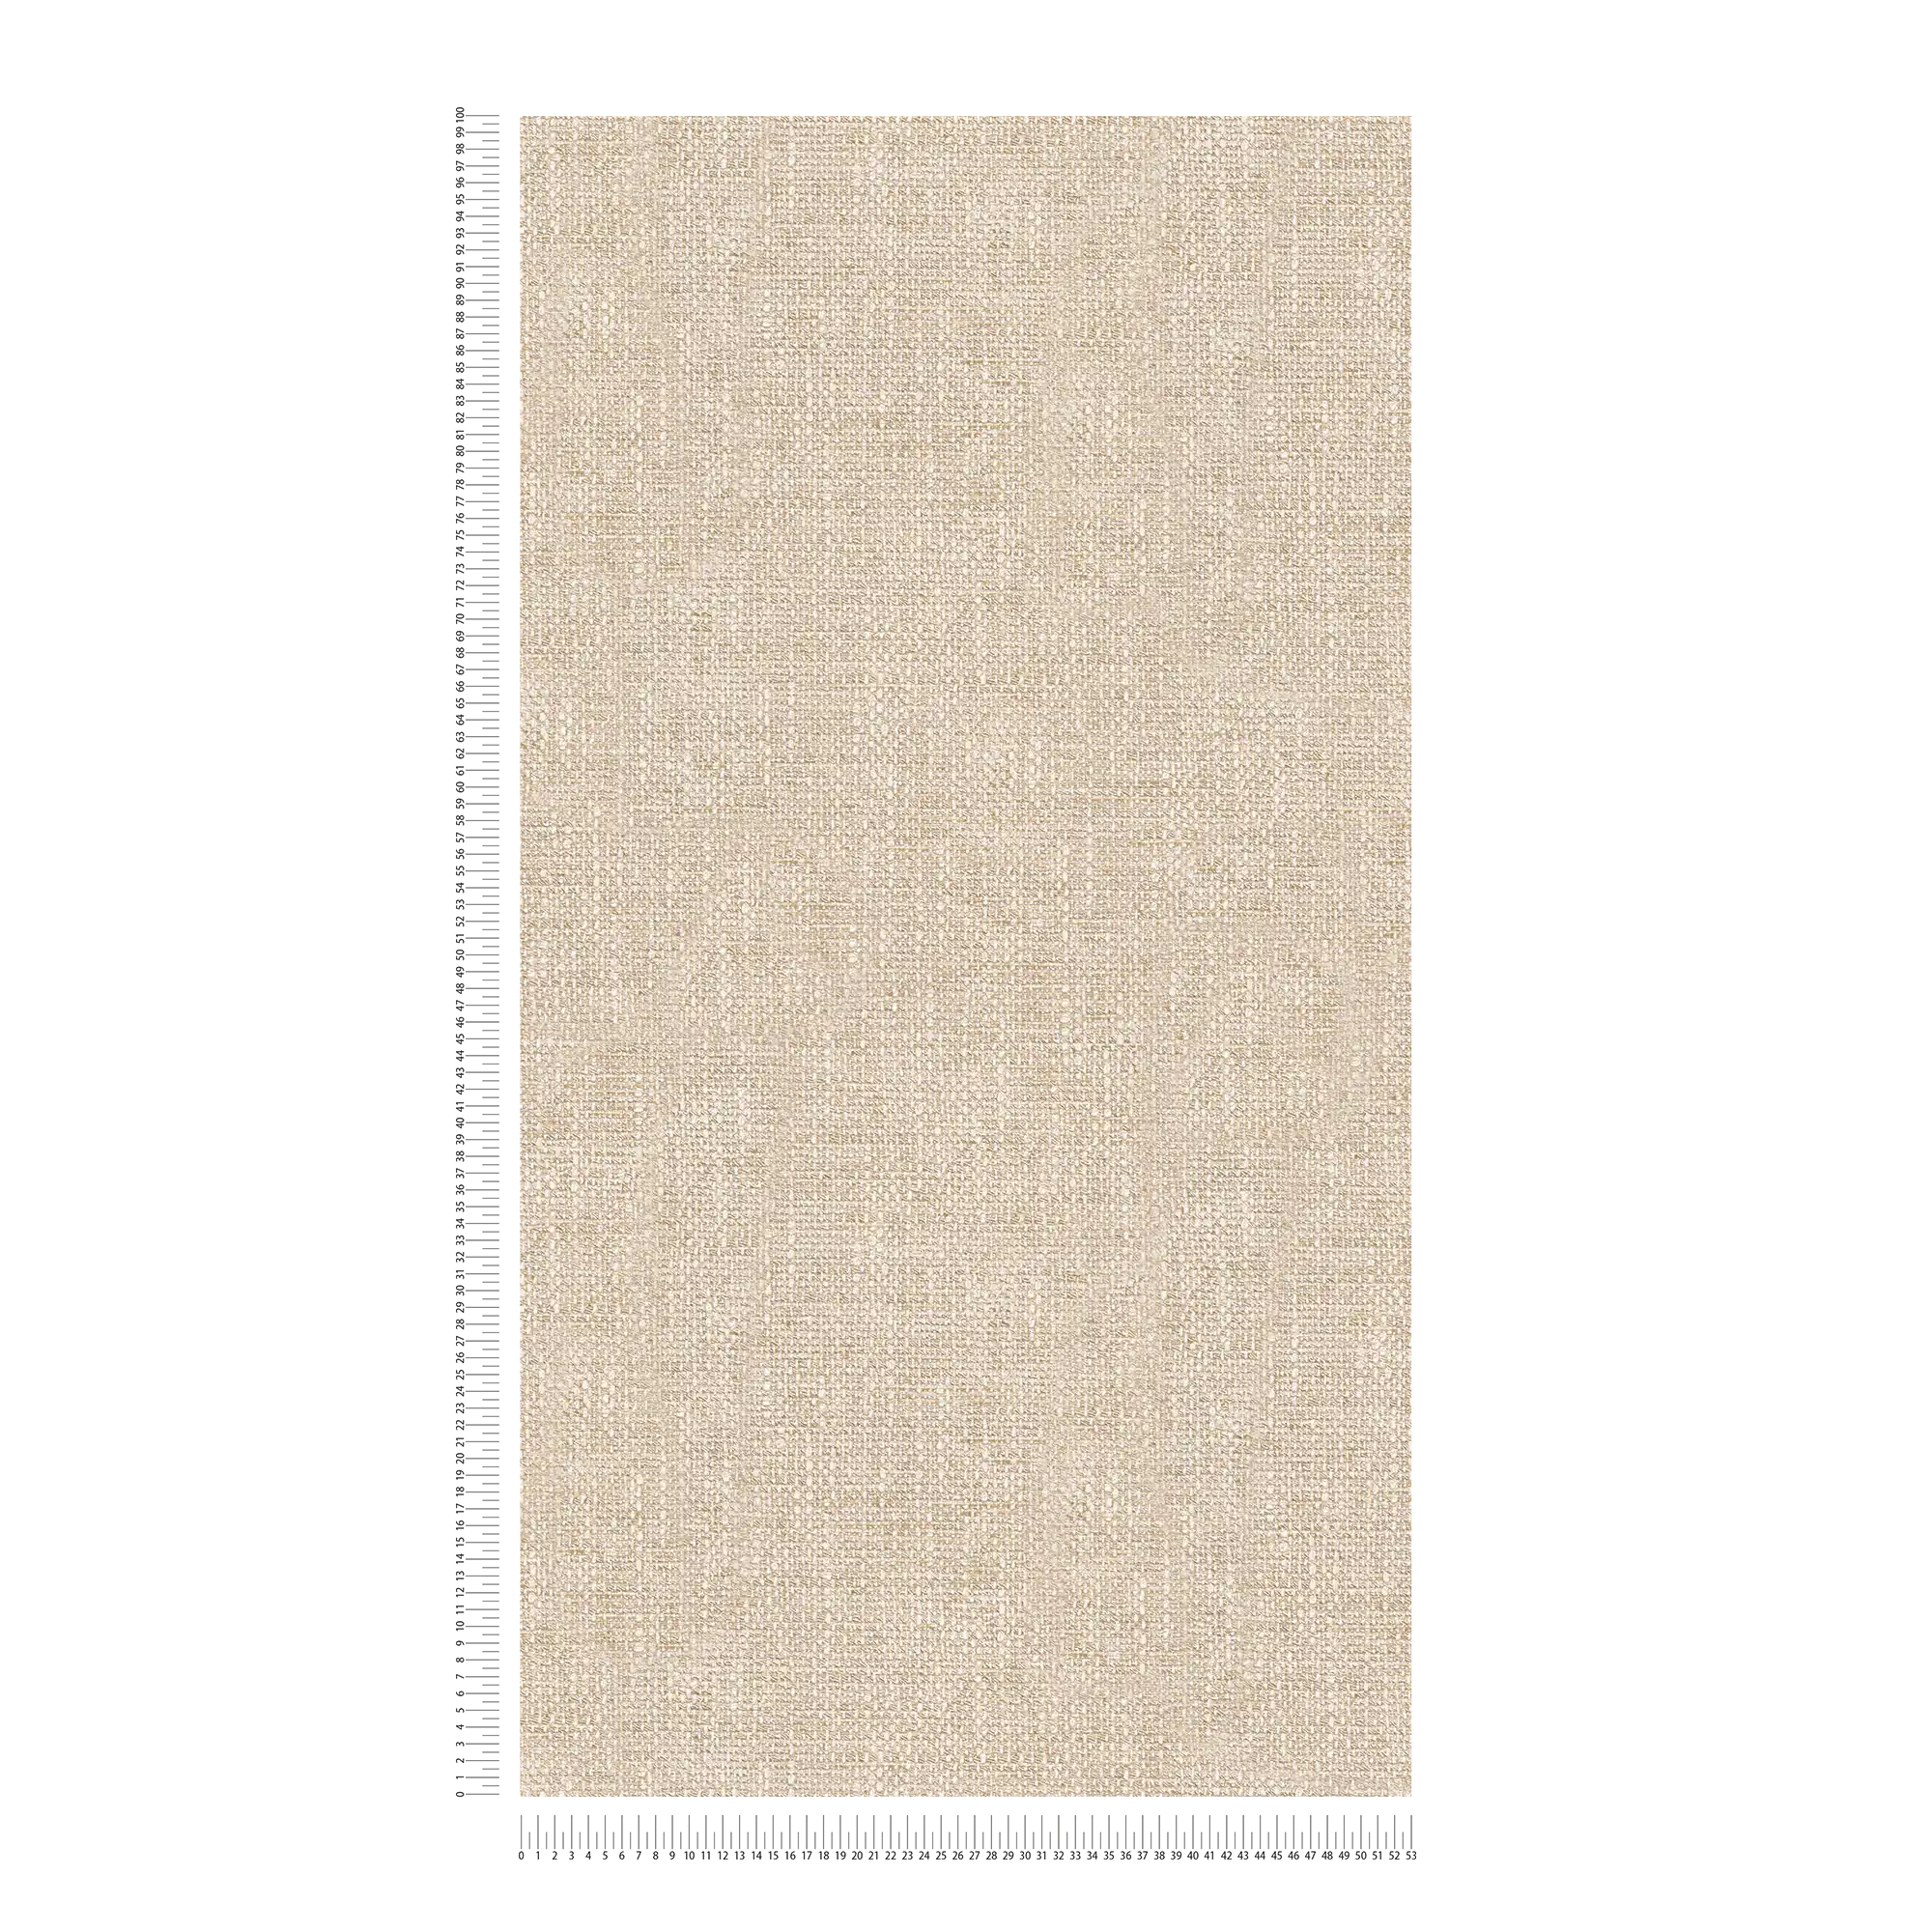             Linen look wallpaper Brown, coarse burlap with texture effect
        